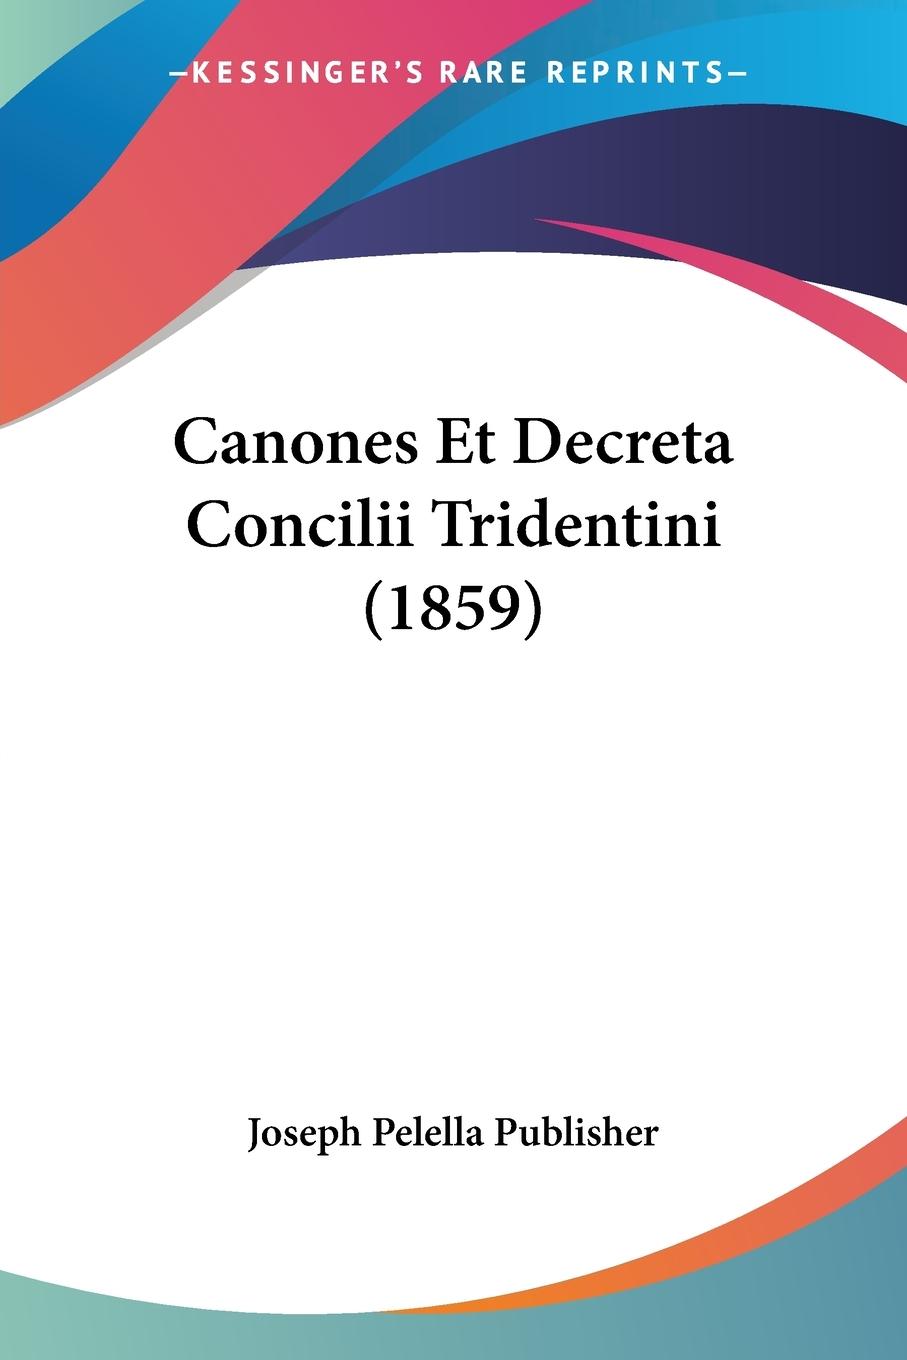 Canones Et Decreta Concilii Tridentini (1859) - Joseph Pelella Publisher